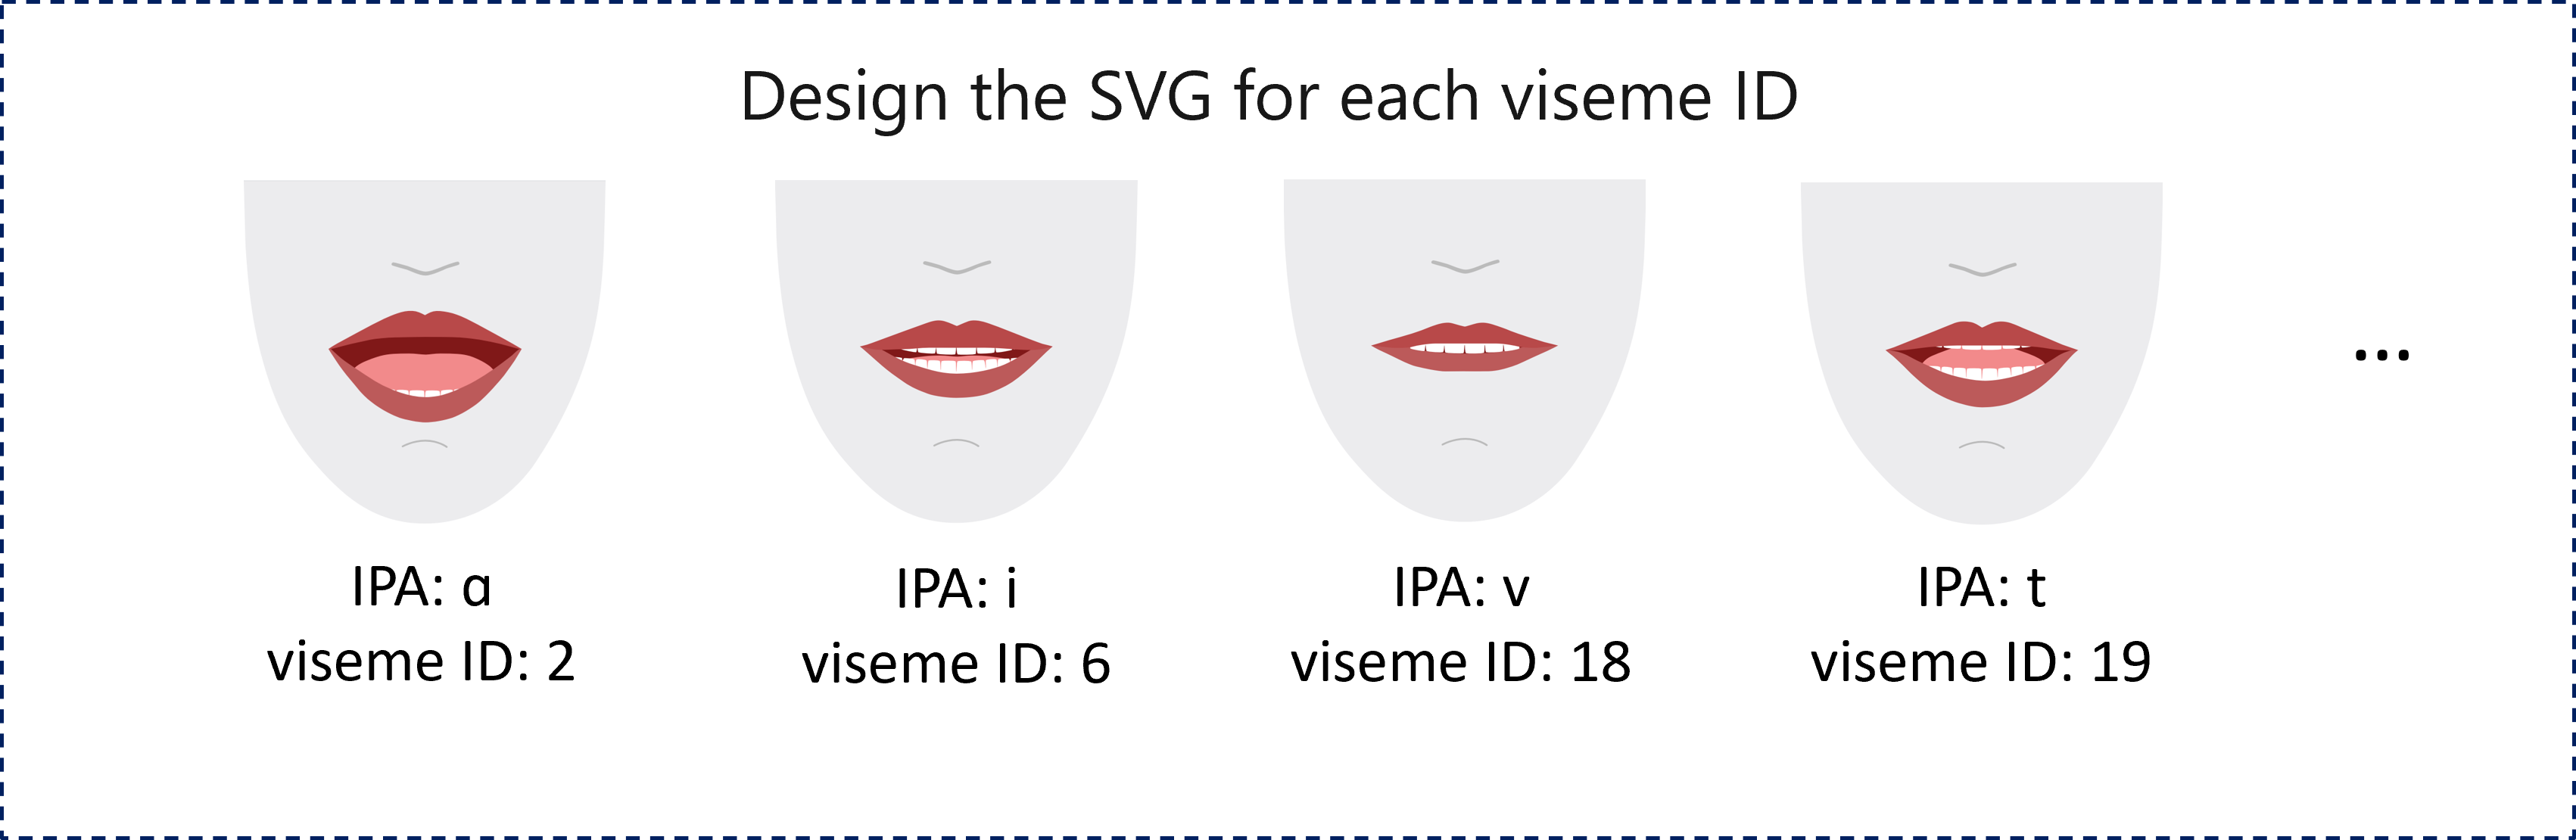 Capture d’écran montrant un exemple de rendu 2D de quatre bouches aux lèvres rouges, chacune représentant un ID de visème différent correspondant à un phonème.